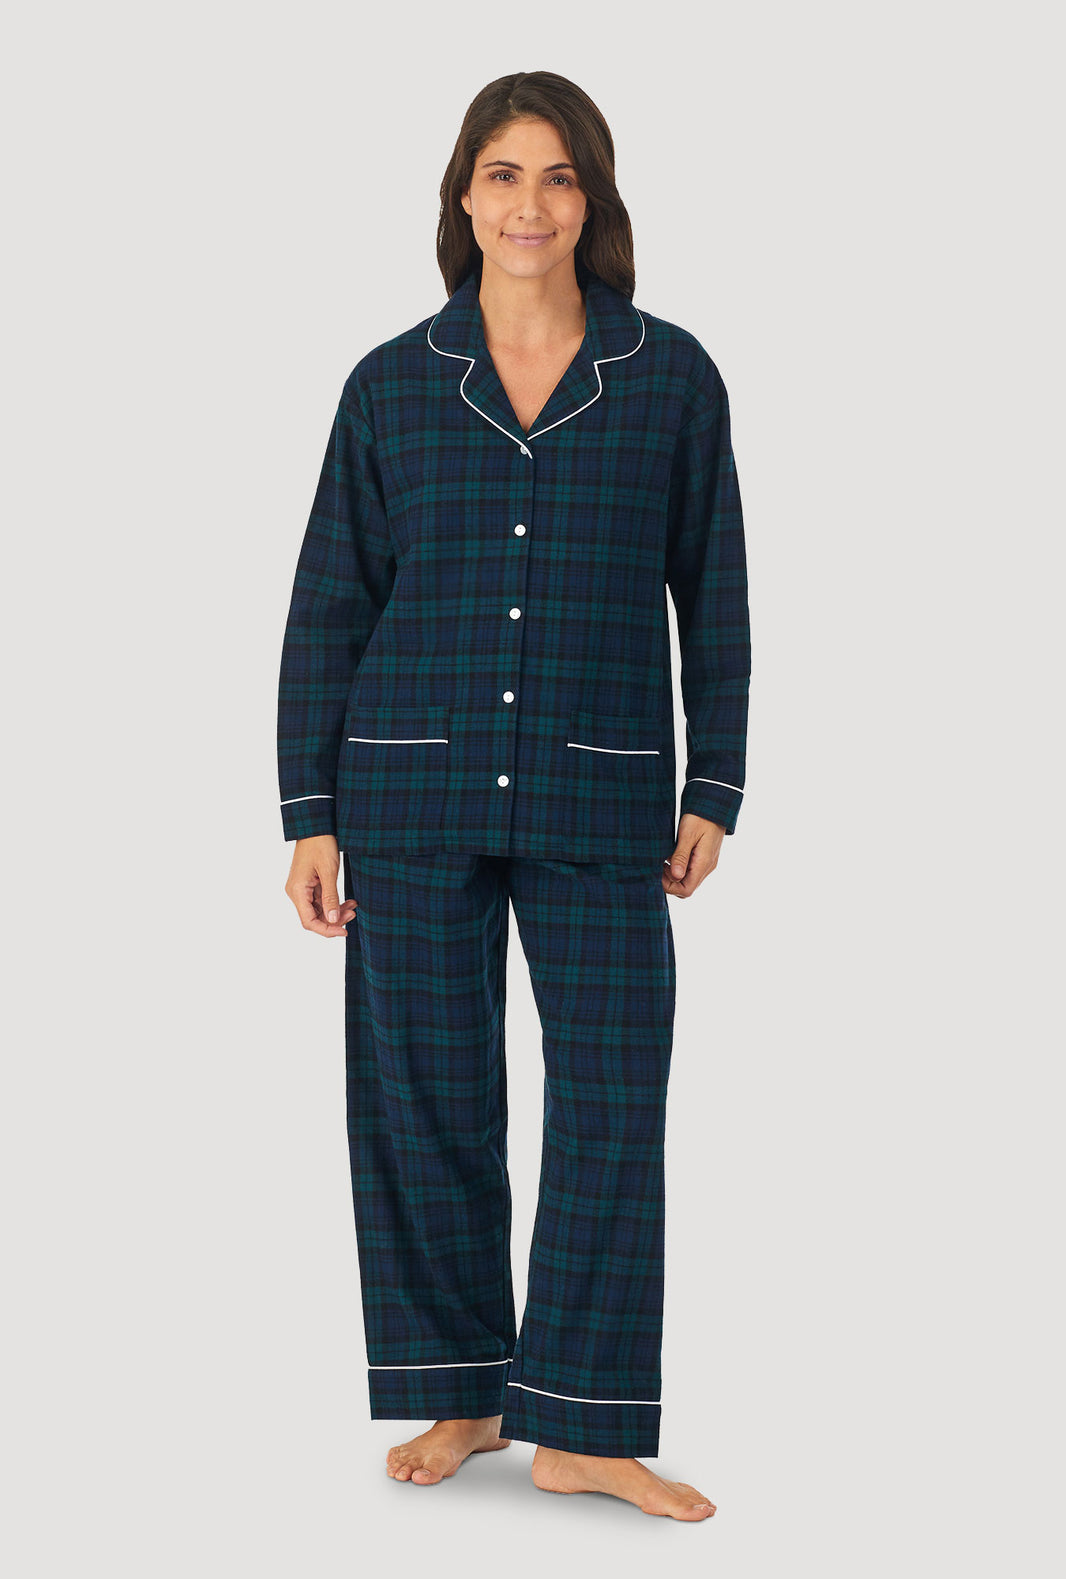 Lanz of Salzburg Pajamas